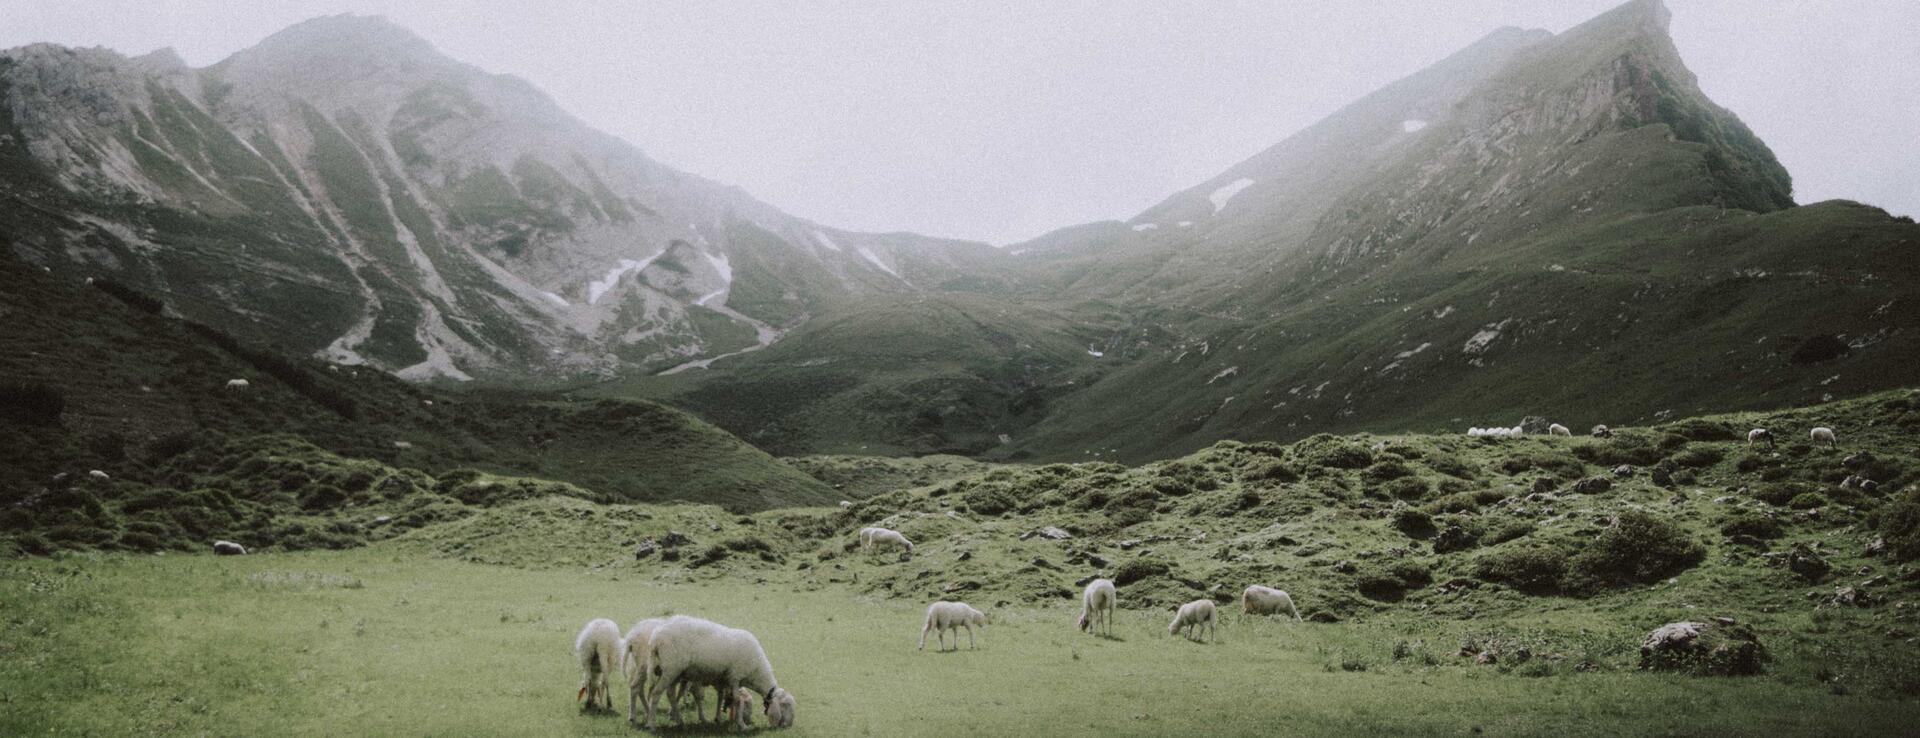 Schafe in den vernebelten Allgäuer Alpen im Sommer| Der Engel in Tirol